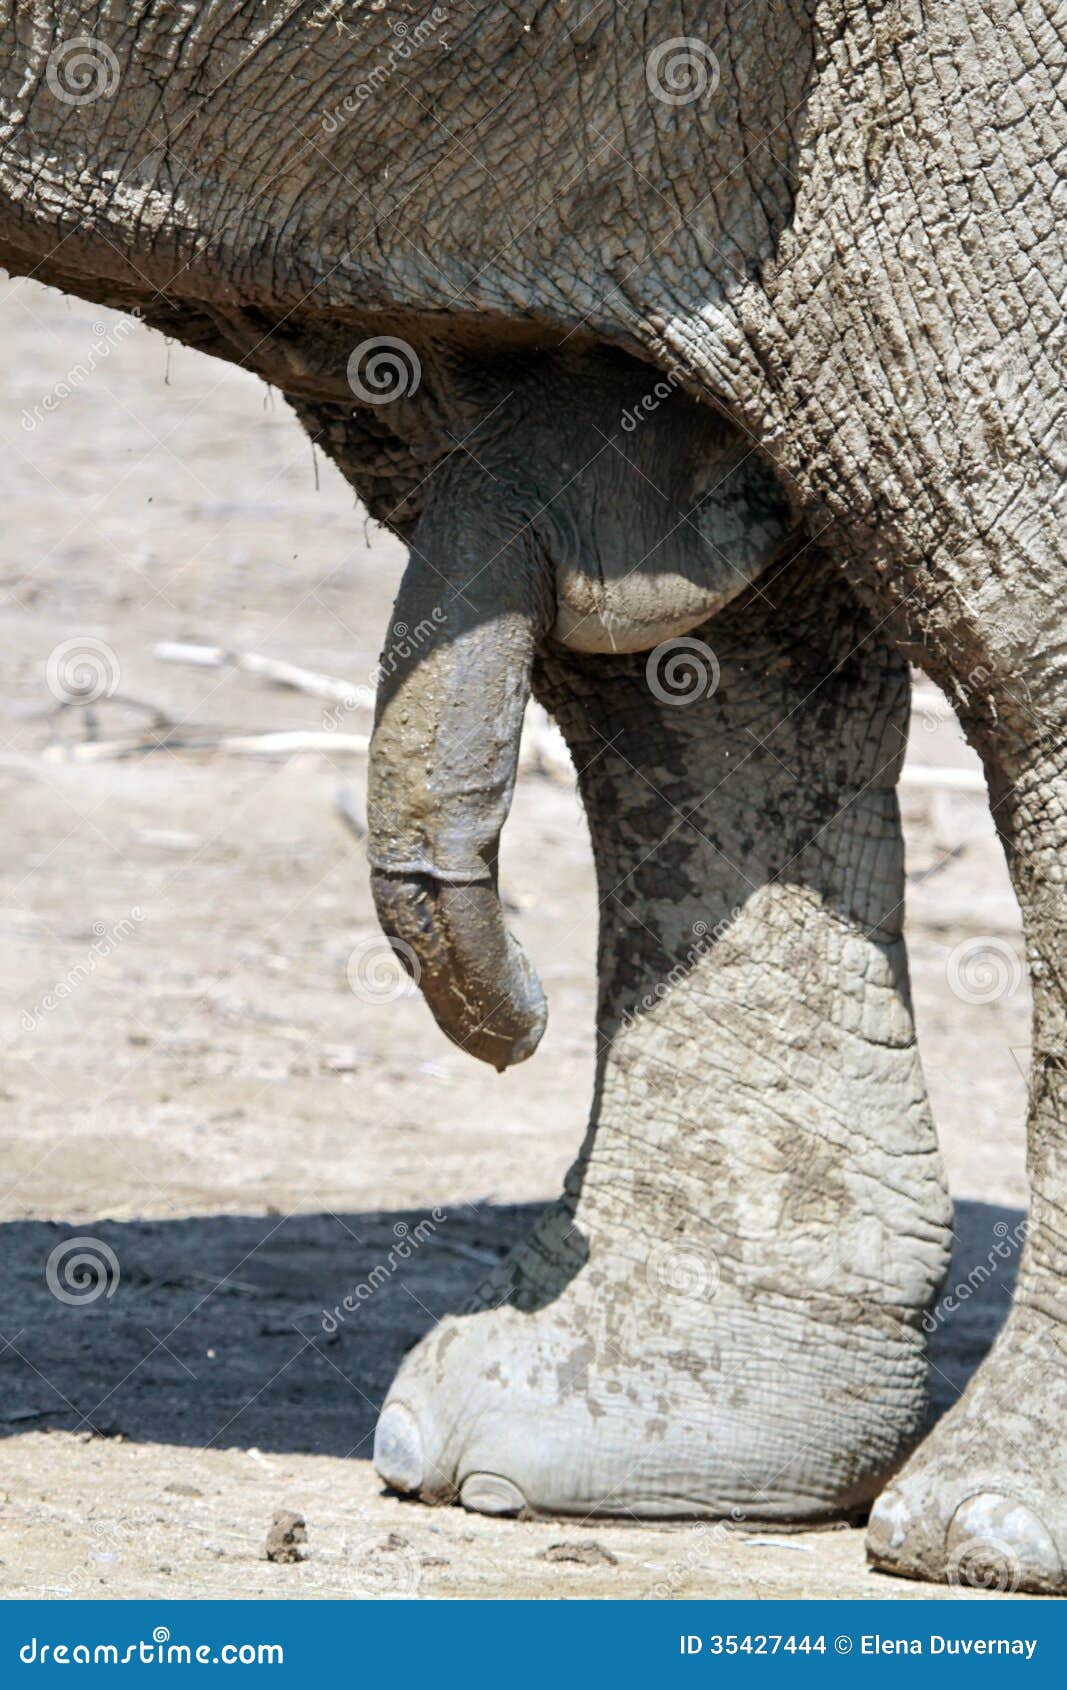 jak duży jest penis słoni